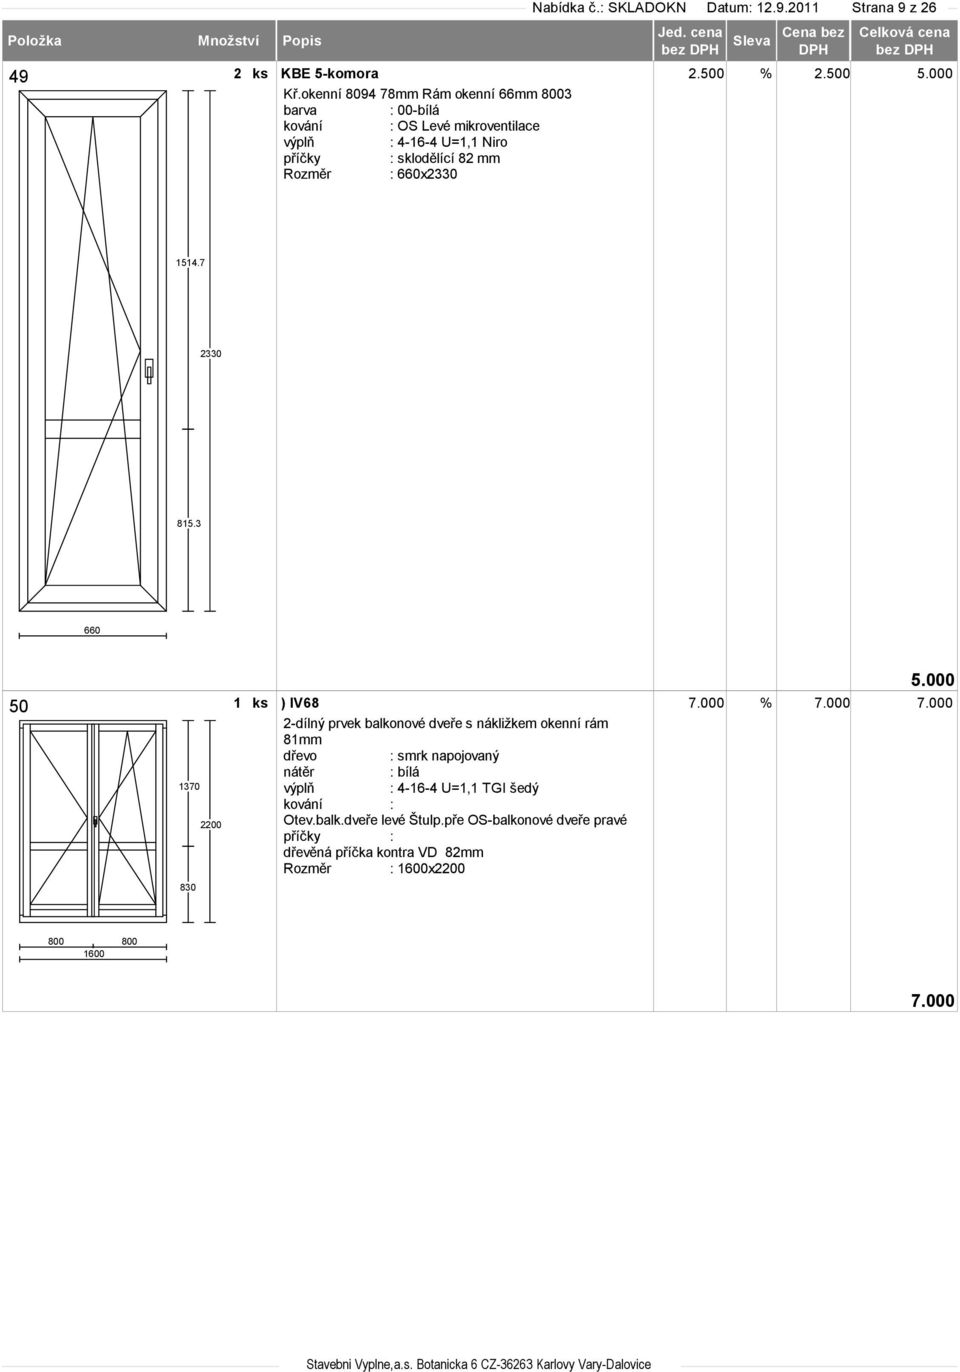 000 2-dílný prvek balkonové dveře s nákližkem okenní rám 81mm : bílá : 4-16-4 U=1,1 TGI šedý kování